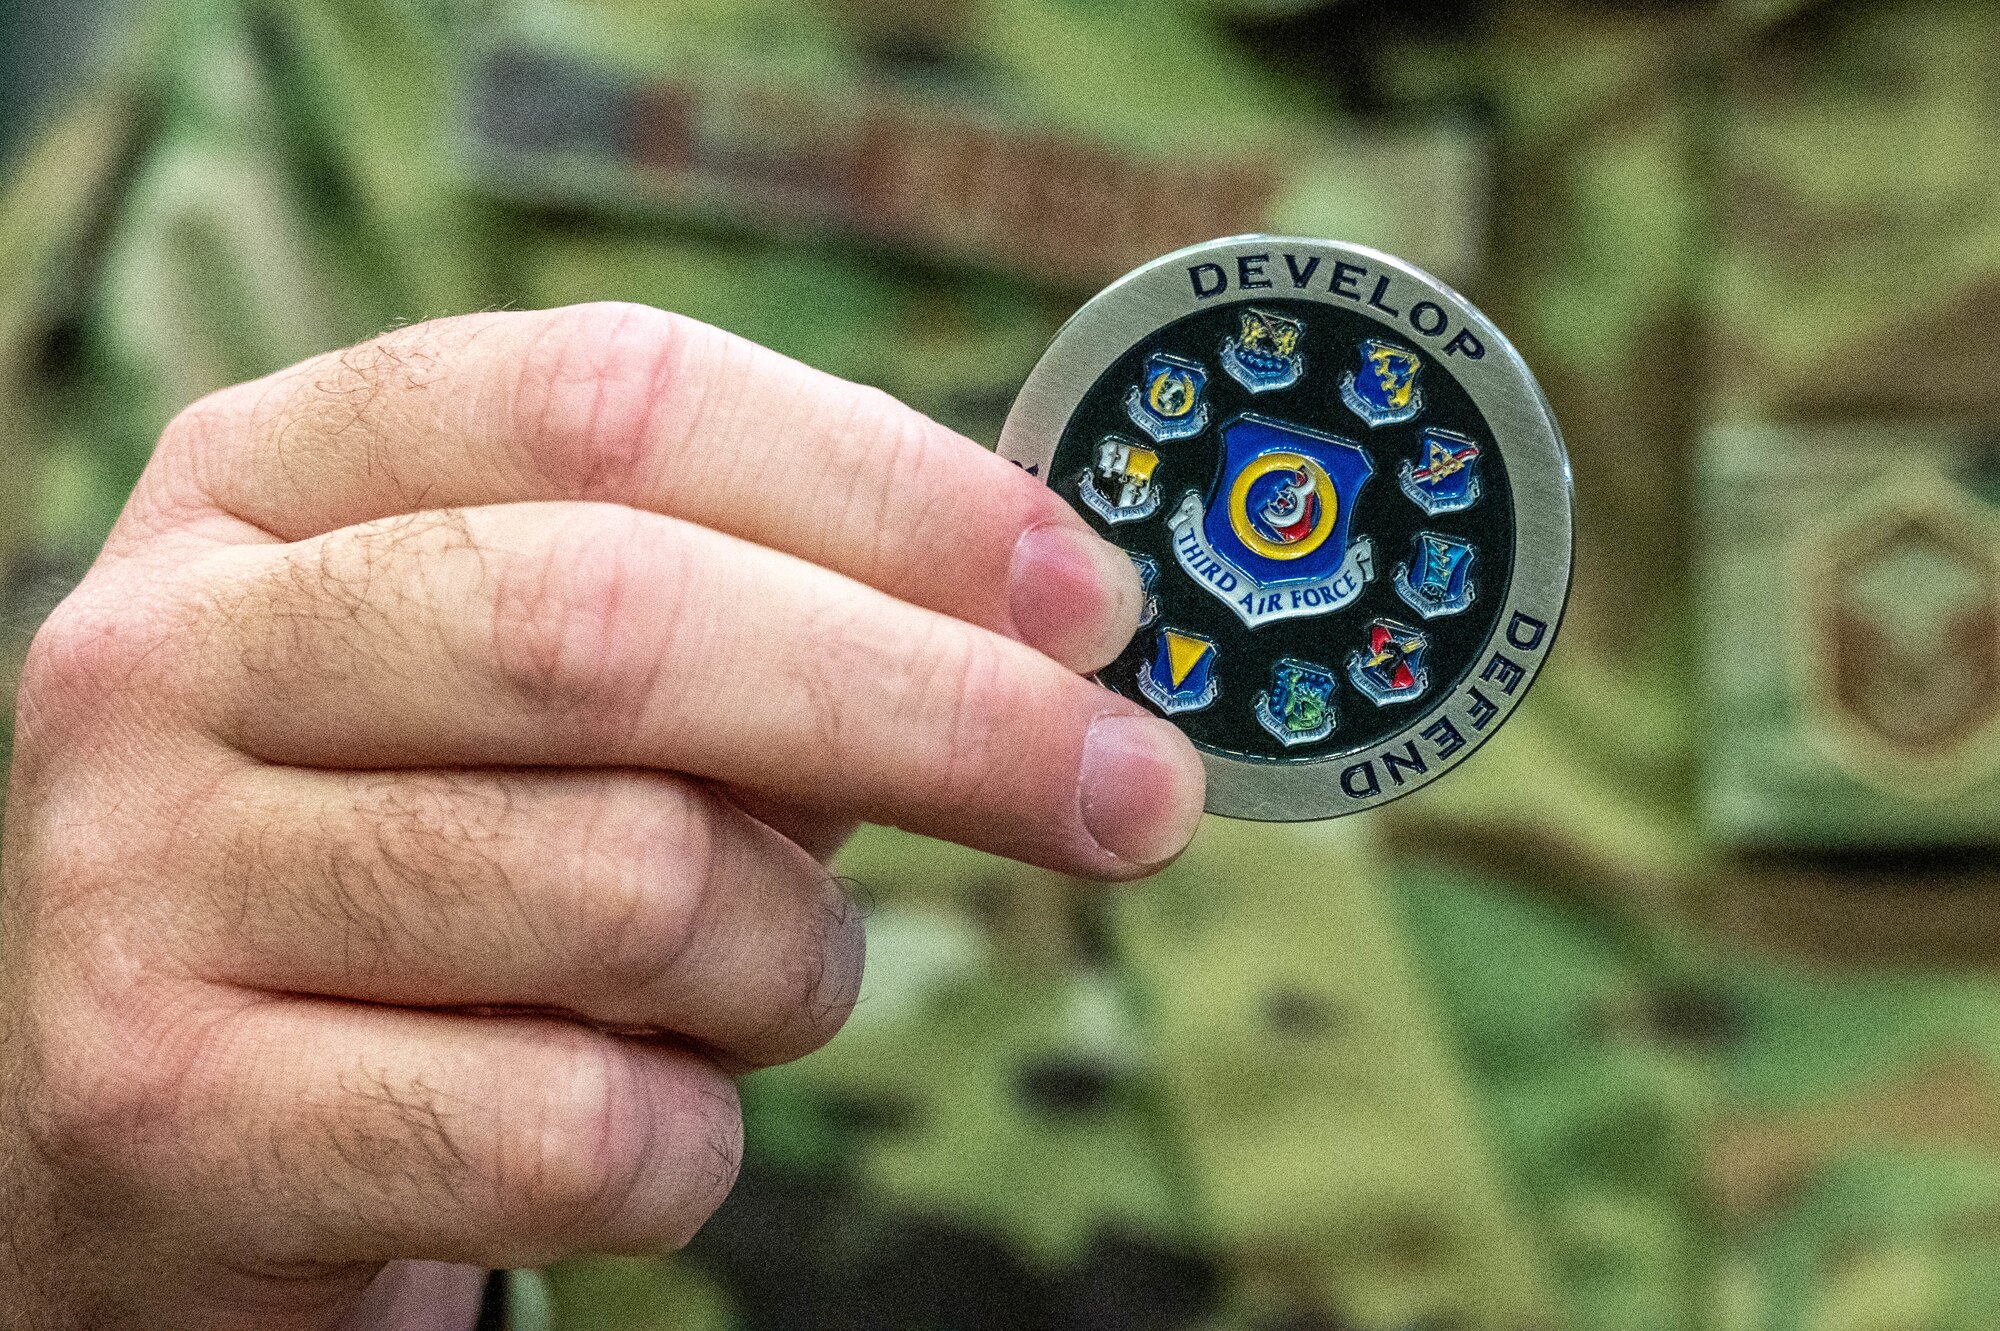 An Airman displays a Third Air Force coin.